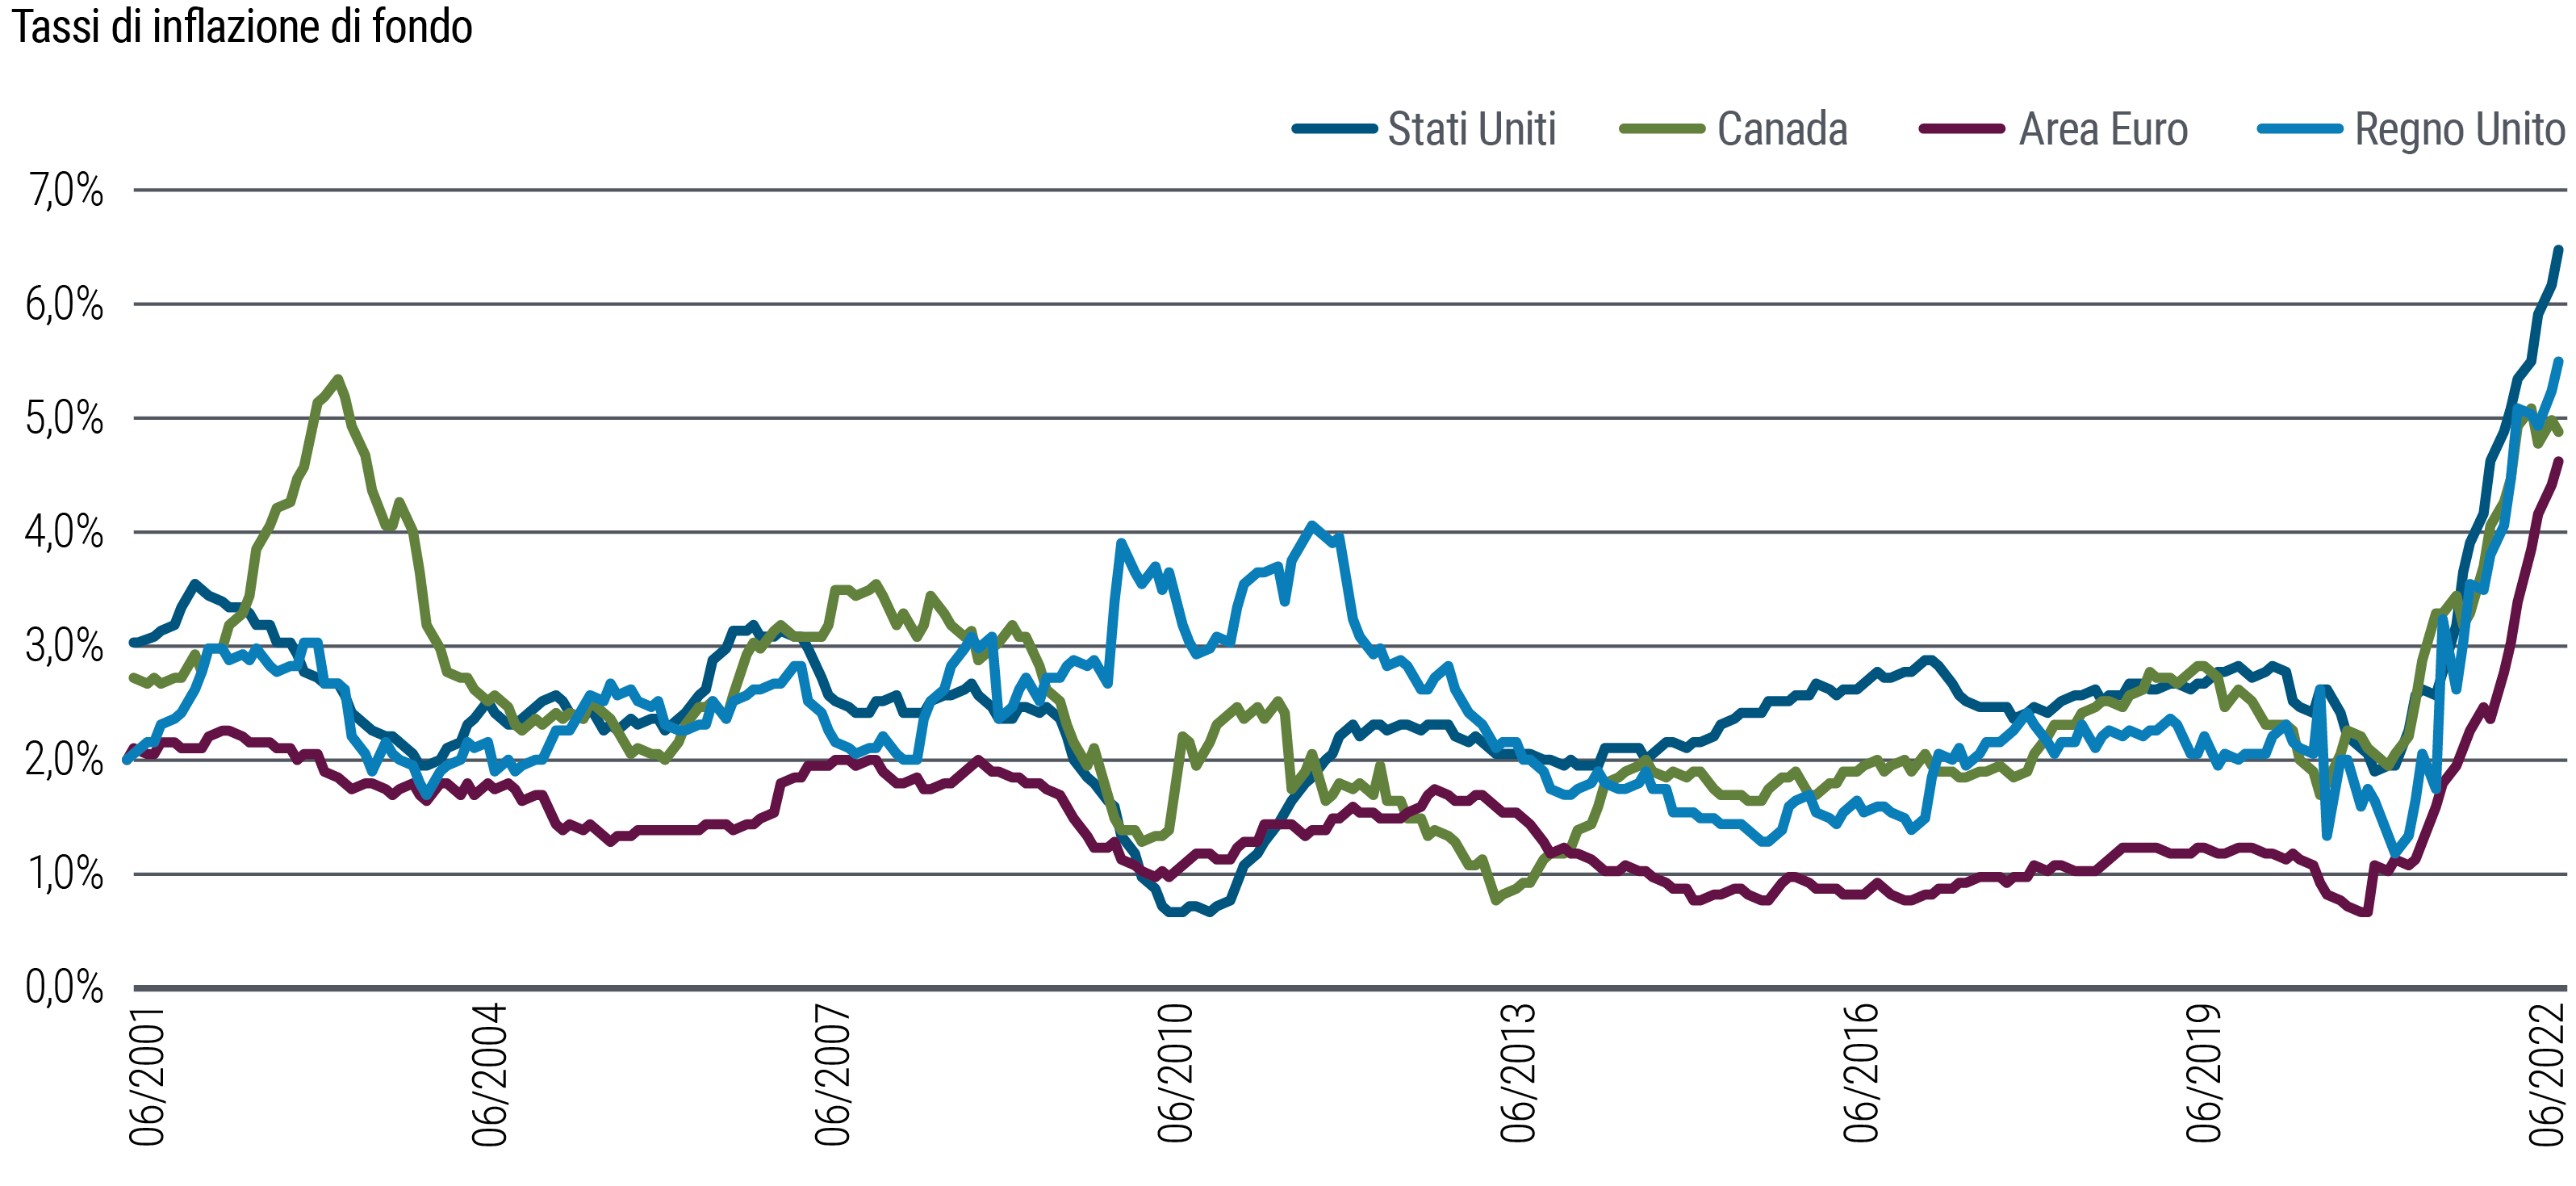 Il grafico lineare mostra i tassi annualizzati dell’inflazione di fondo “vischiosa” da giugno 2001 a luglio 2022 di Stati Uniti, Canada, Regno Unito e Area Euro. Il termine “vischioso” è definito nelle note sotto il grafico. In queste regioni mondiali si osserva l’impennata dell’inflazione vischiosa dei prezzi al consumo negli ultimi anni, a partire dal Regno Unito a fine 2020, seguito dalle altre regioni a inizio 2021. L’inflazione vischiosa dei prezzi al consumo negli Stati Uniti al 31 luglio 2022 era salita al 6,5% da poco meno del 2% a inizio 2021. Nell’Area Euro a fine luglio era salita al 4,7% da circa lo 0,7% a fine 2020. Il grafico illustra inoltre come l’inflazione vischiosa di tutte le regioni negli ultimi tempi sia fuoriuscita dal range normale mostrato per circa due decenni.